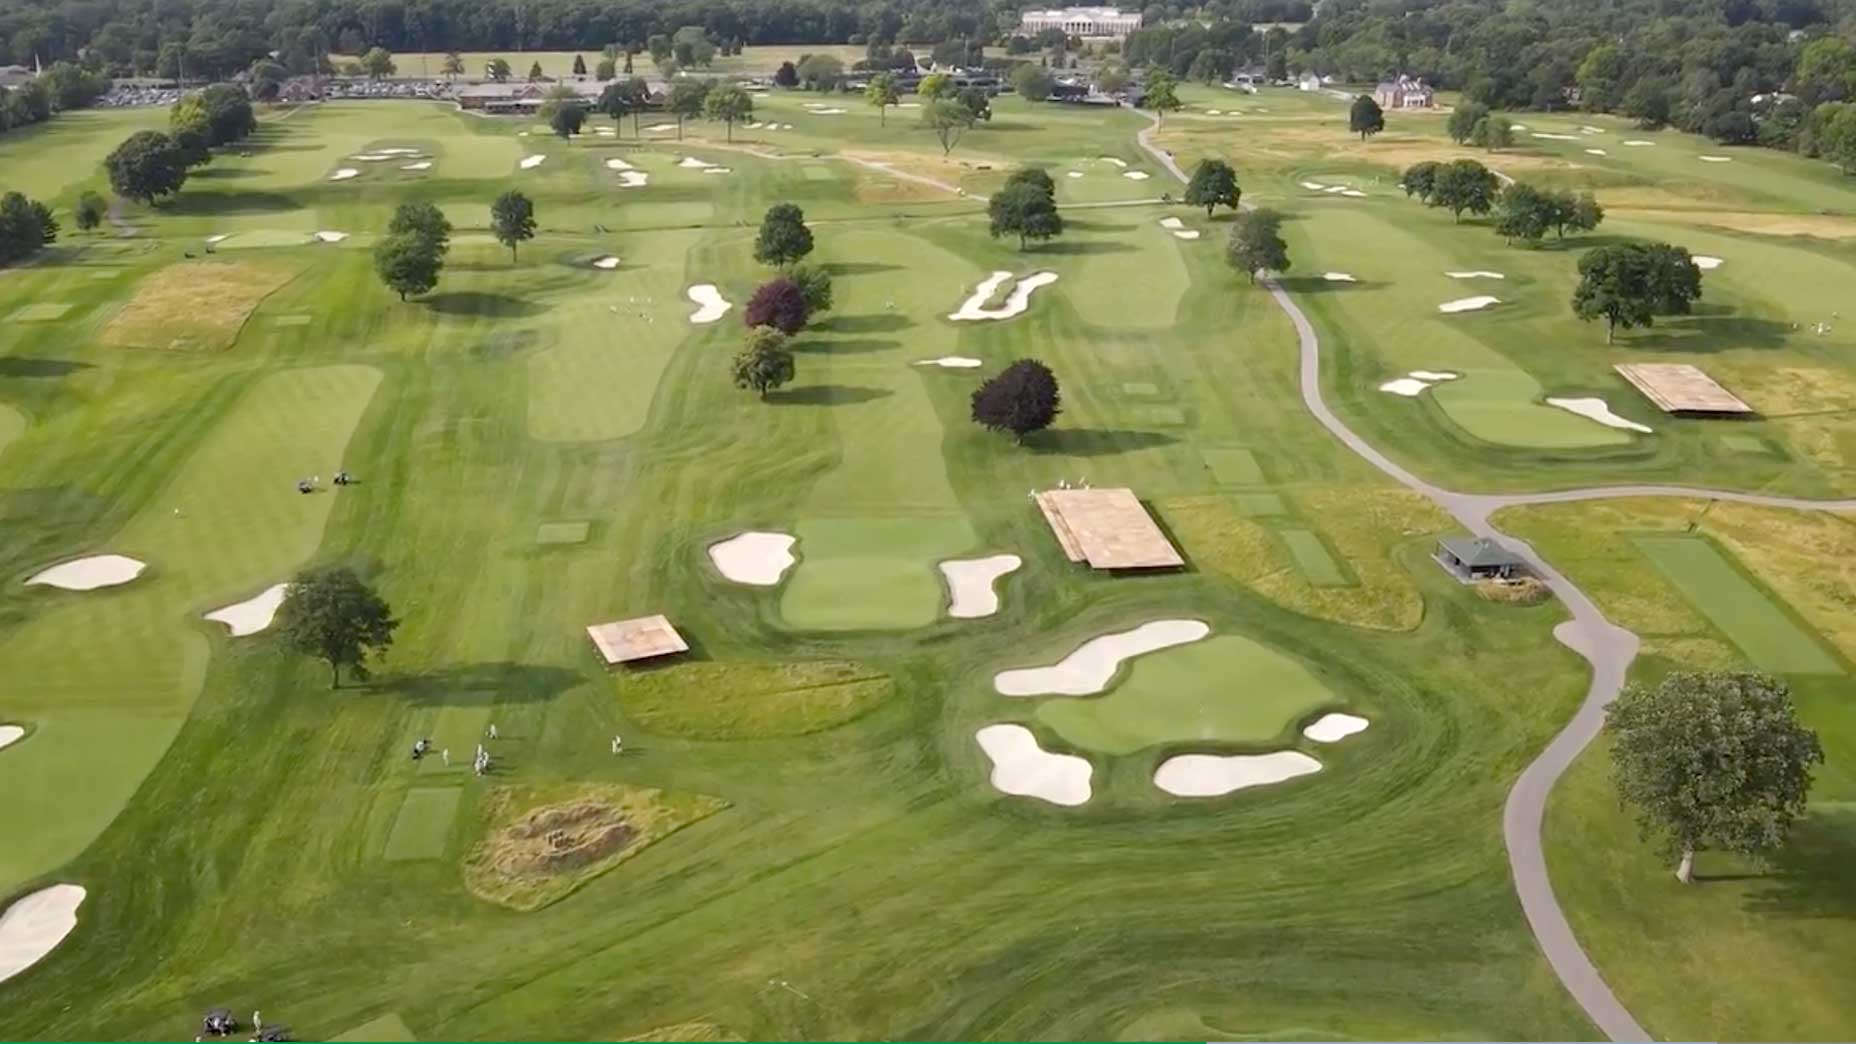 Inverness Golf Club in Toledo, Ohio.